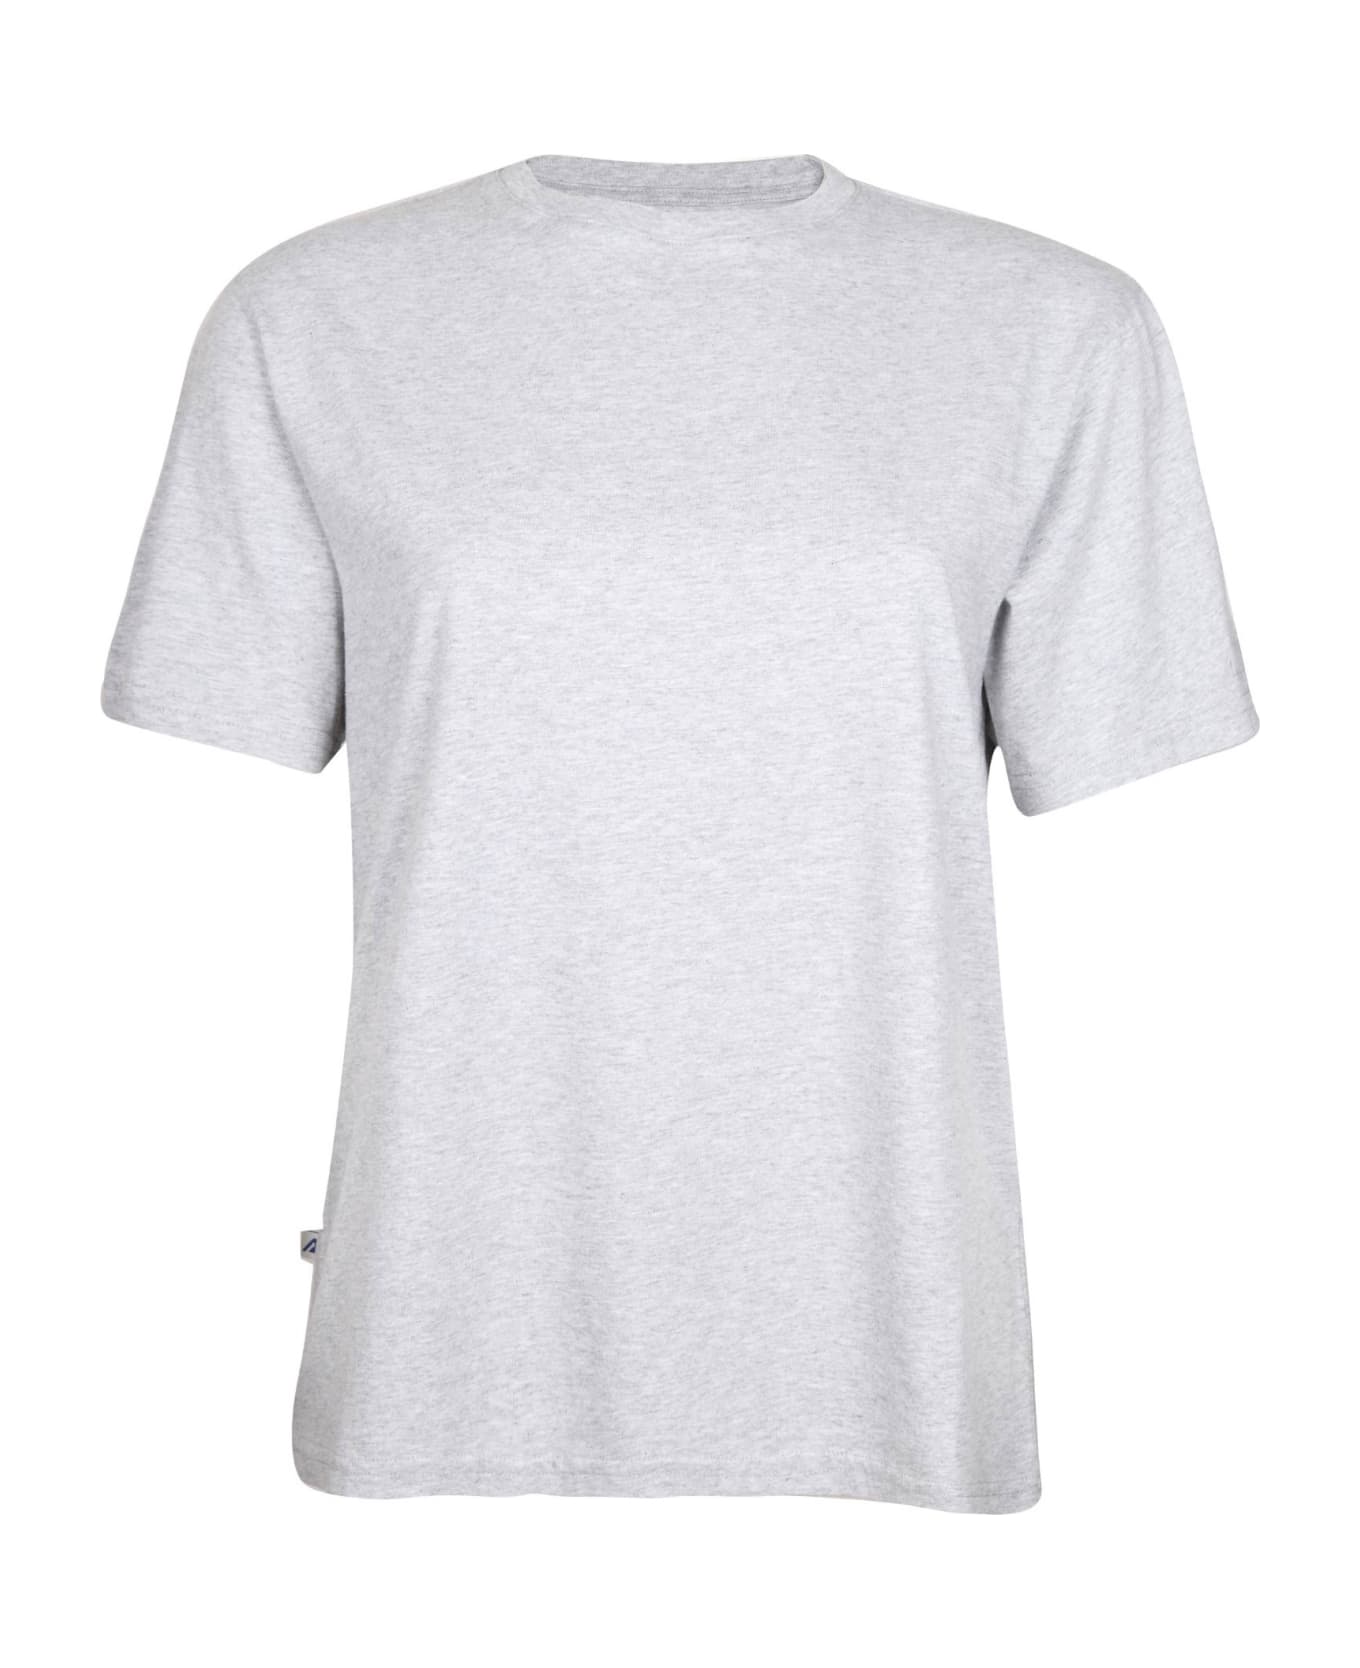 Autry Melange Gray Colroe Cotton T-shirt - MELANGE